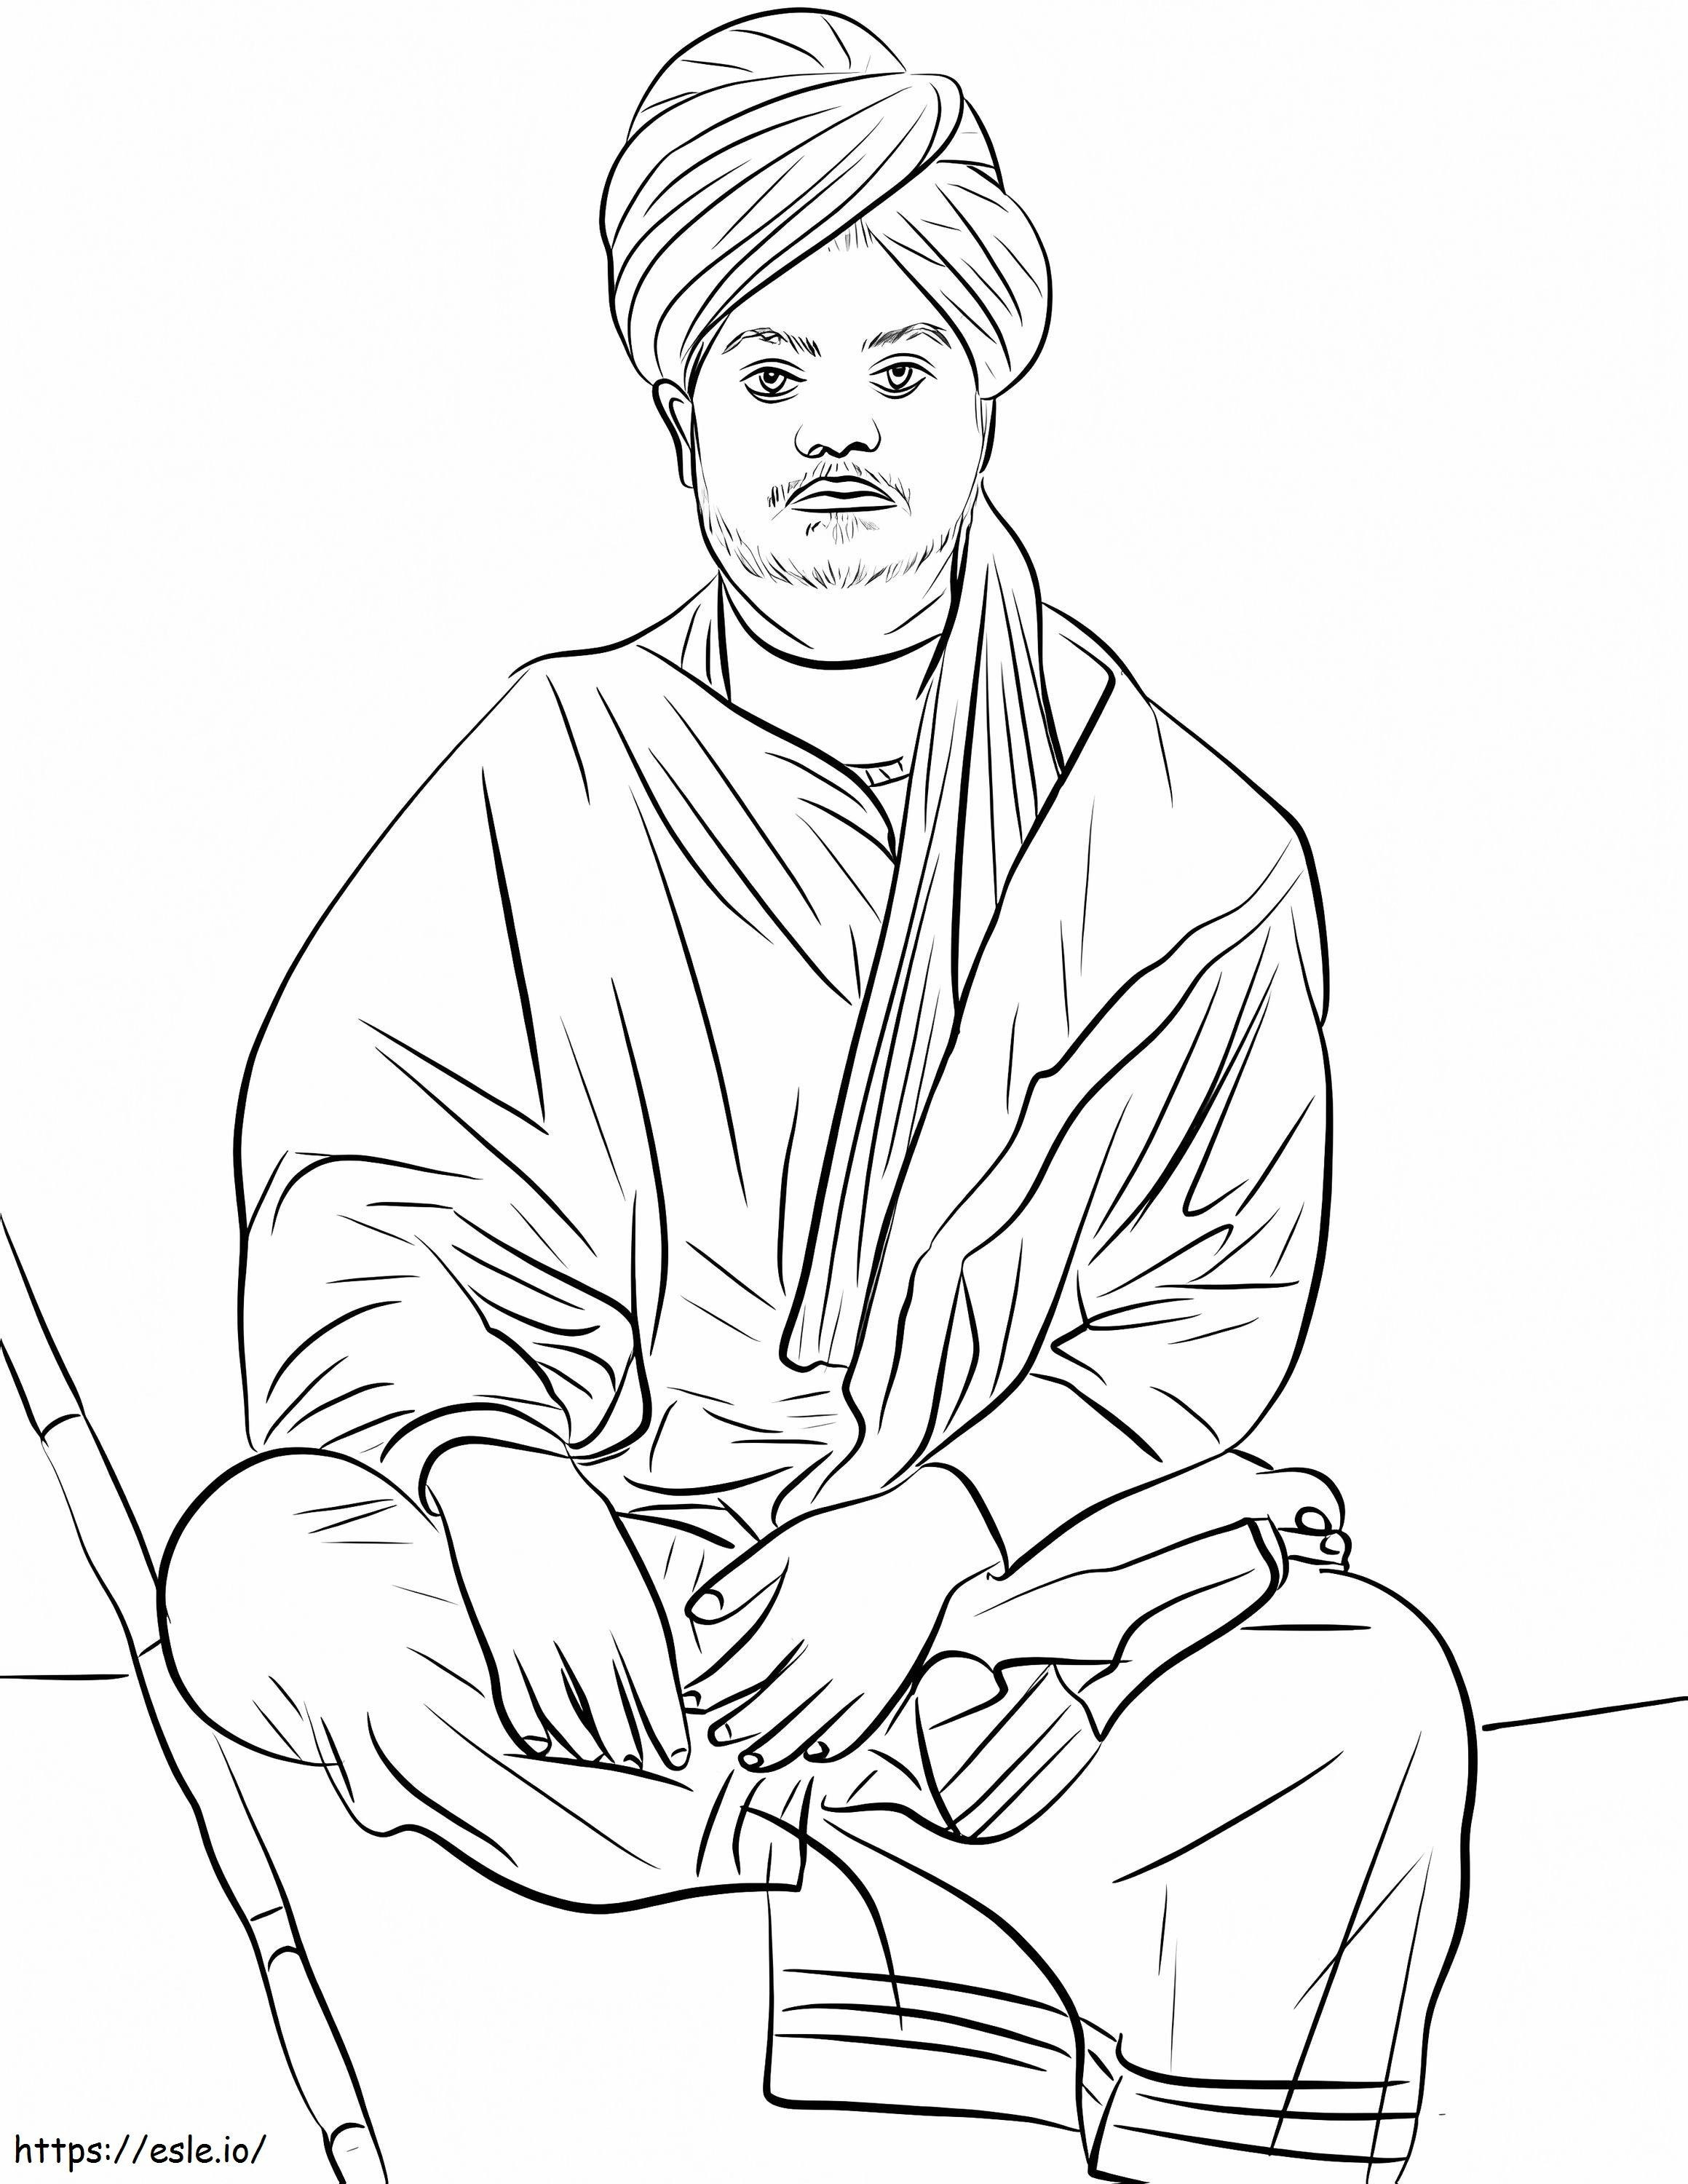 Swami Vivekananda de colorat